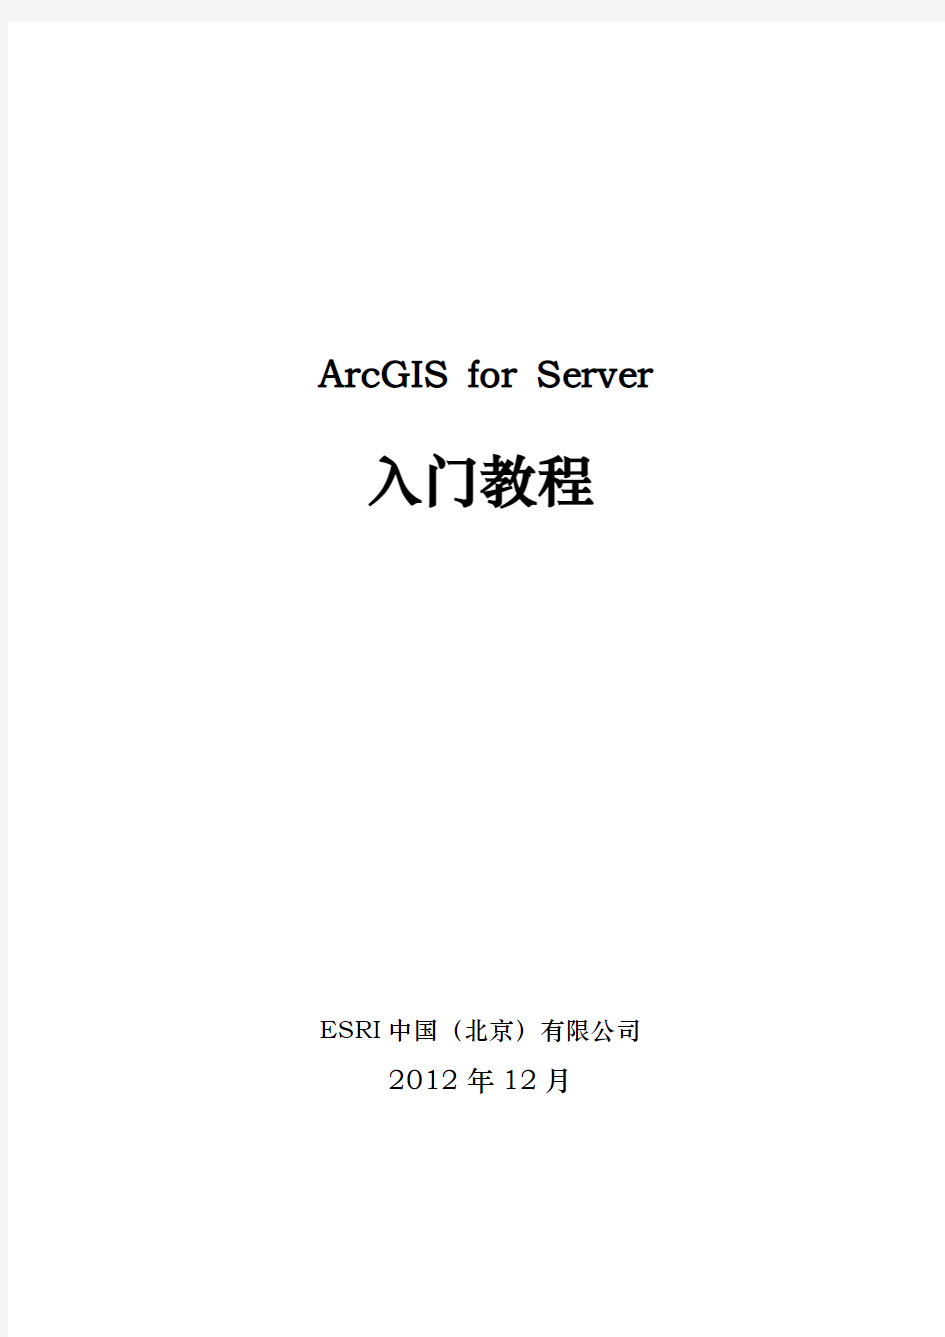 ArcGIS 10.1 for server入门教程_V1.1